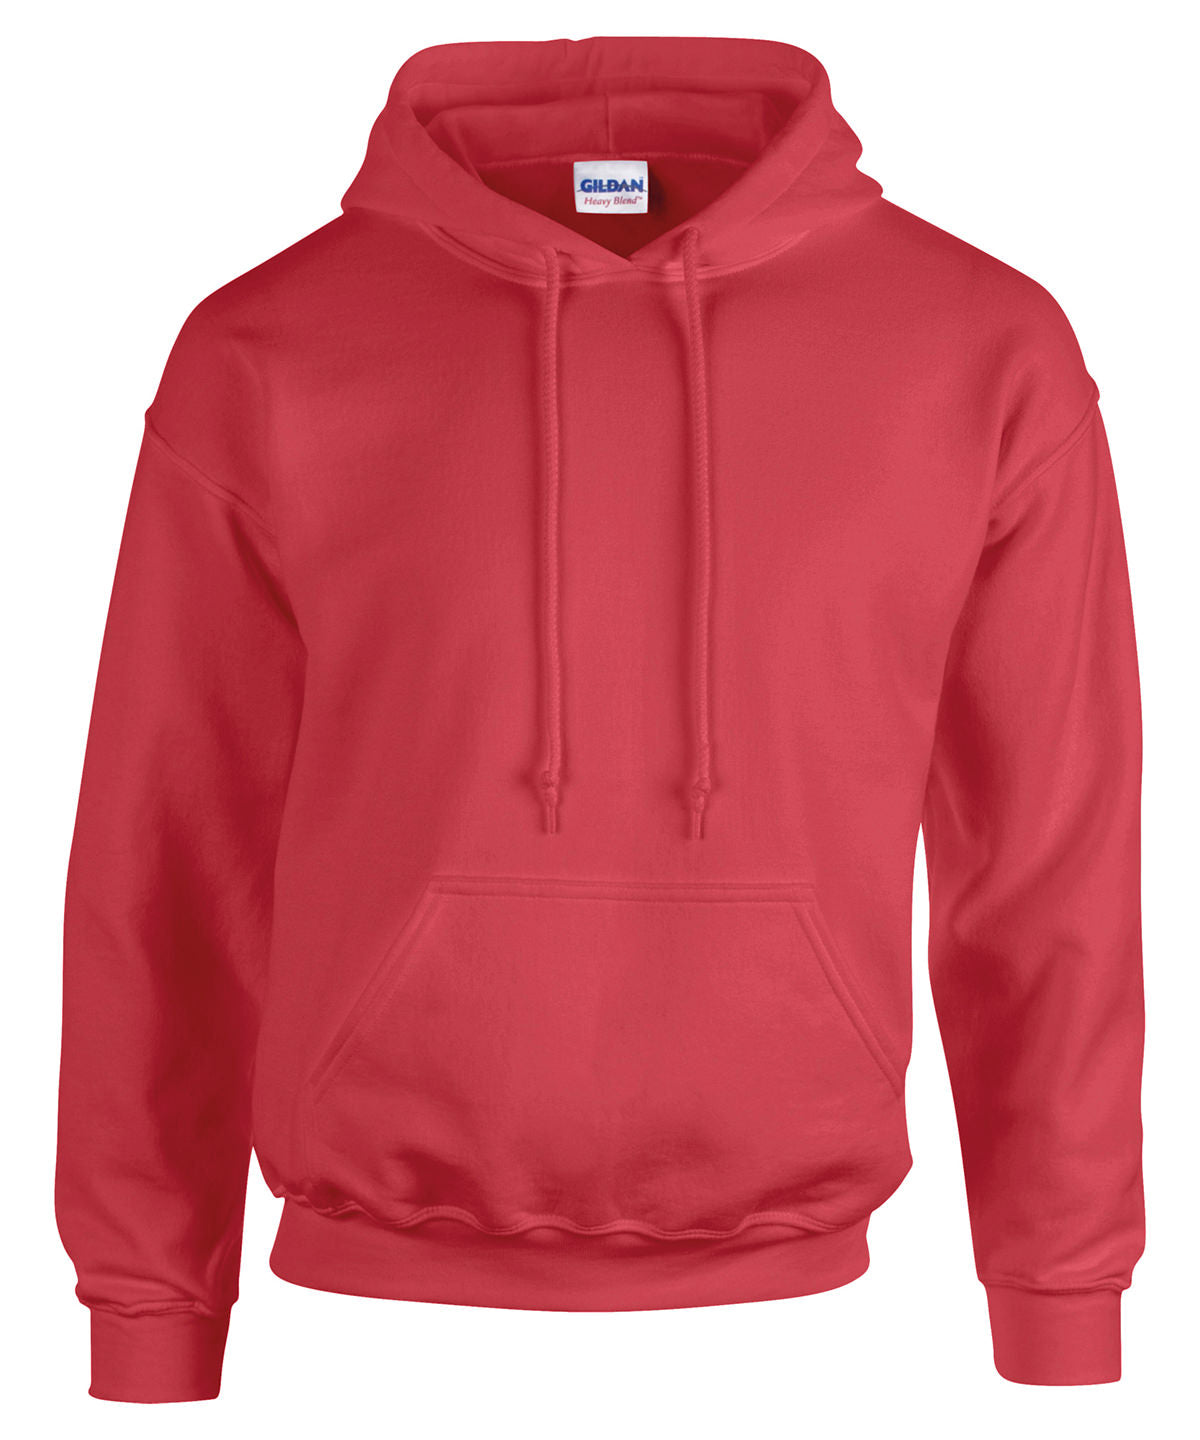 Personalised Hoodies - Mid Red Gildan Heavy Blend™ hooded sweatshirt